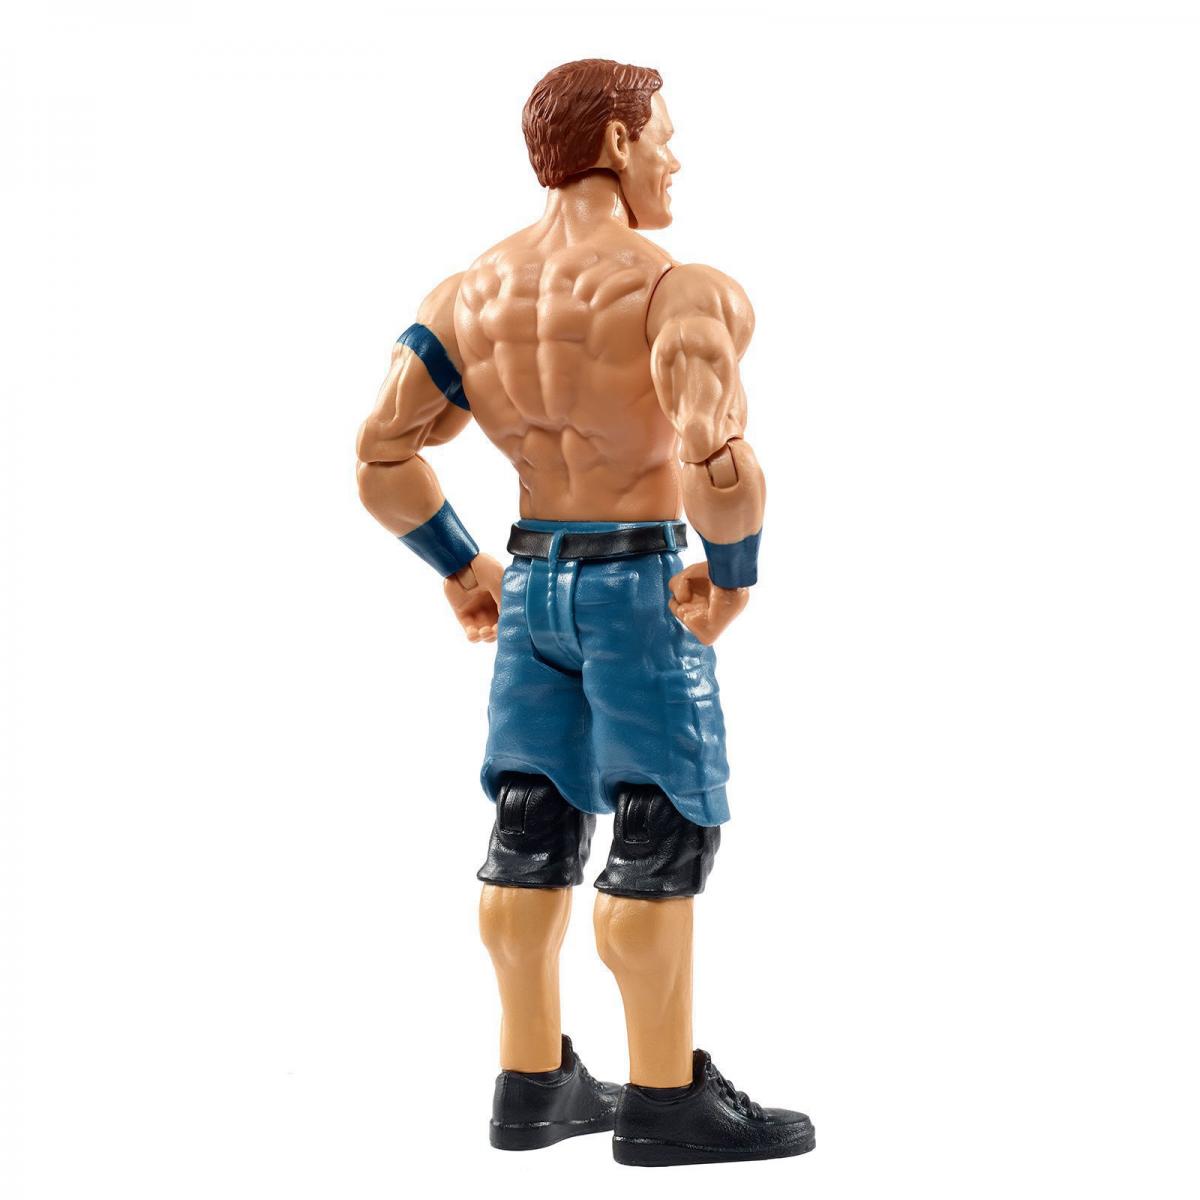 2020 WWE Mattel Basic Top Picks John Cena